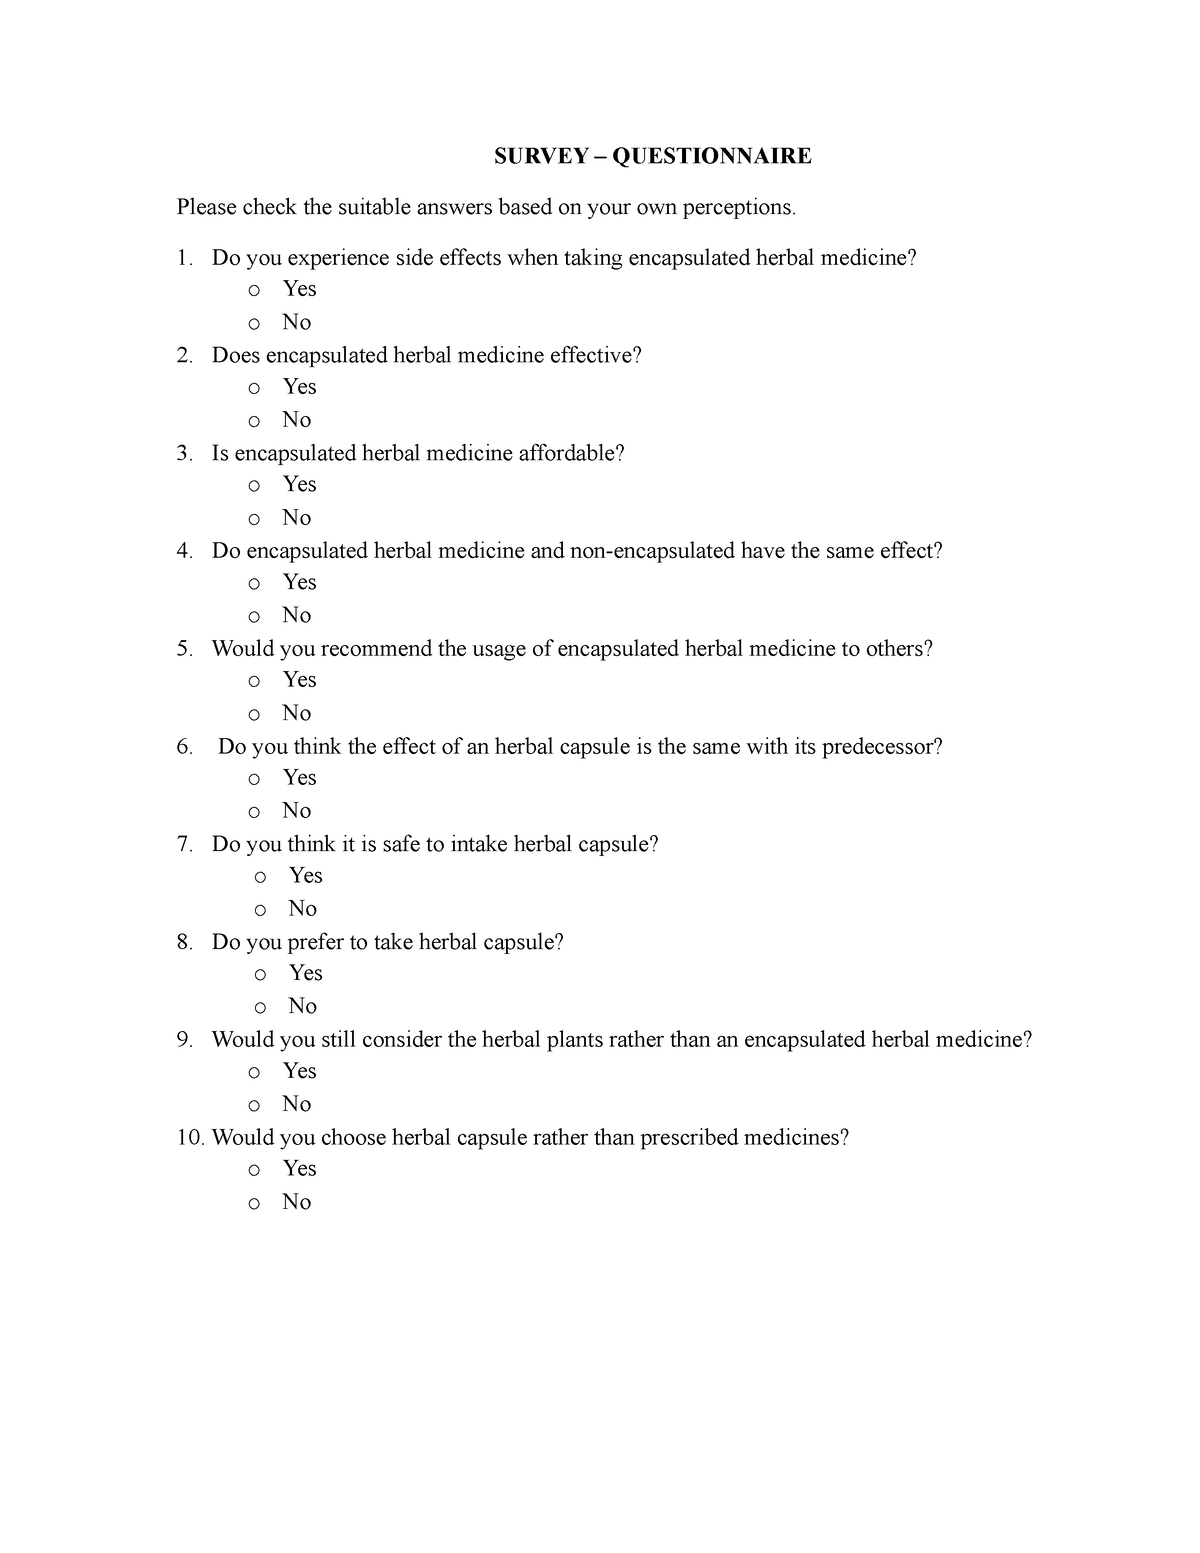 survey-survey-questionnaire-please-check-the-suitable-answers-based